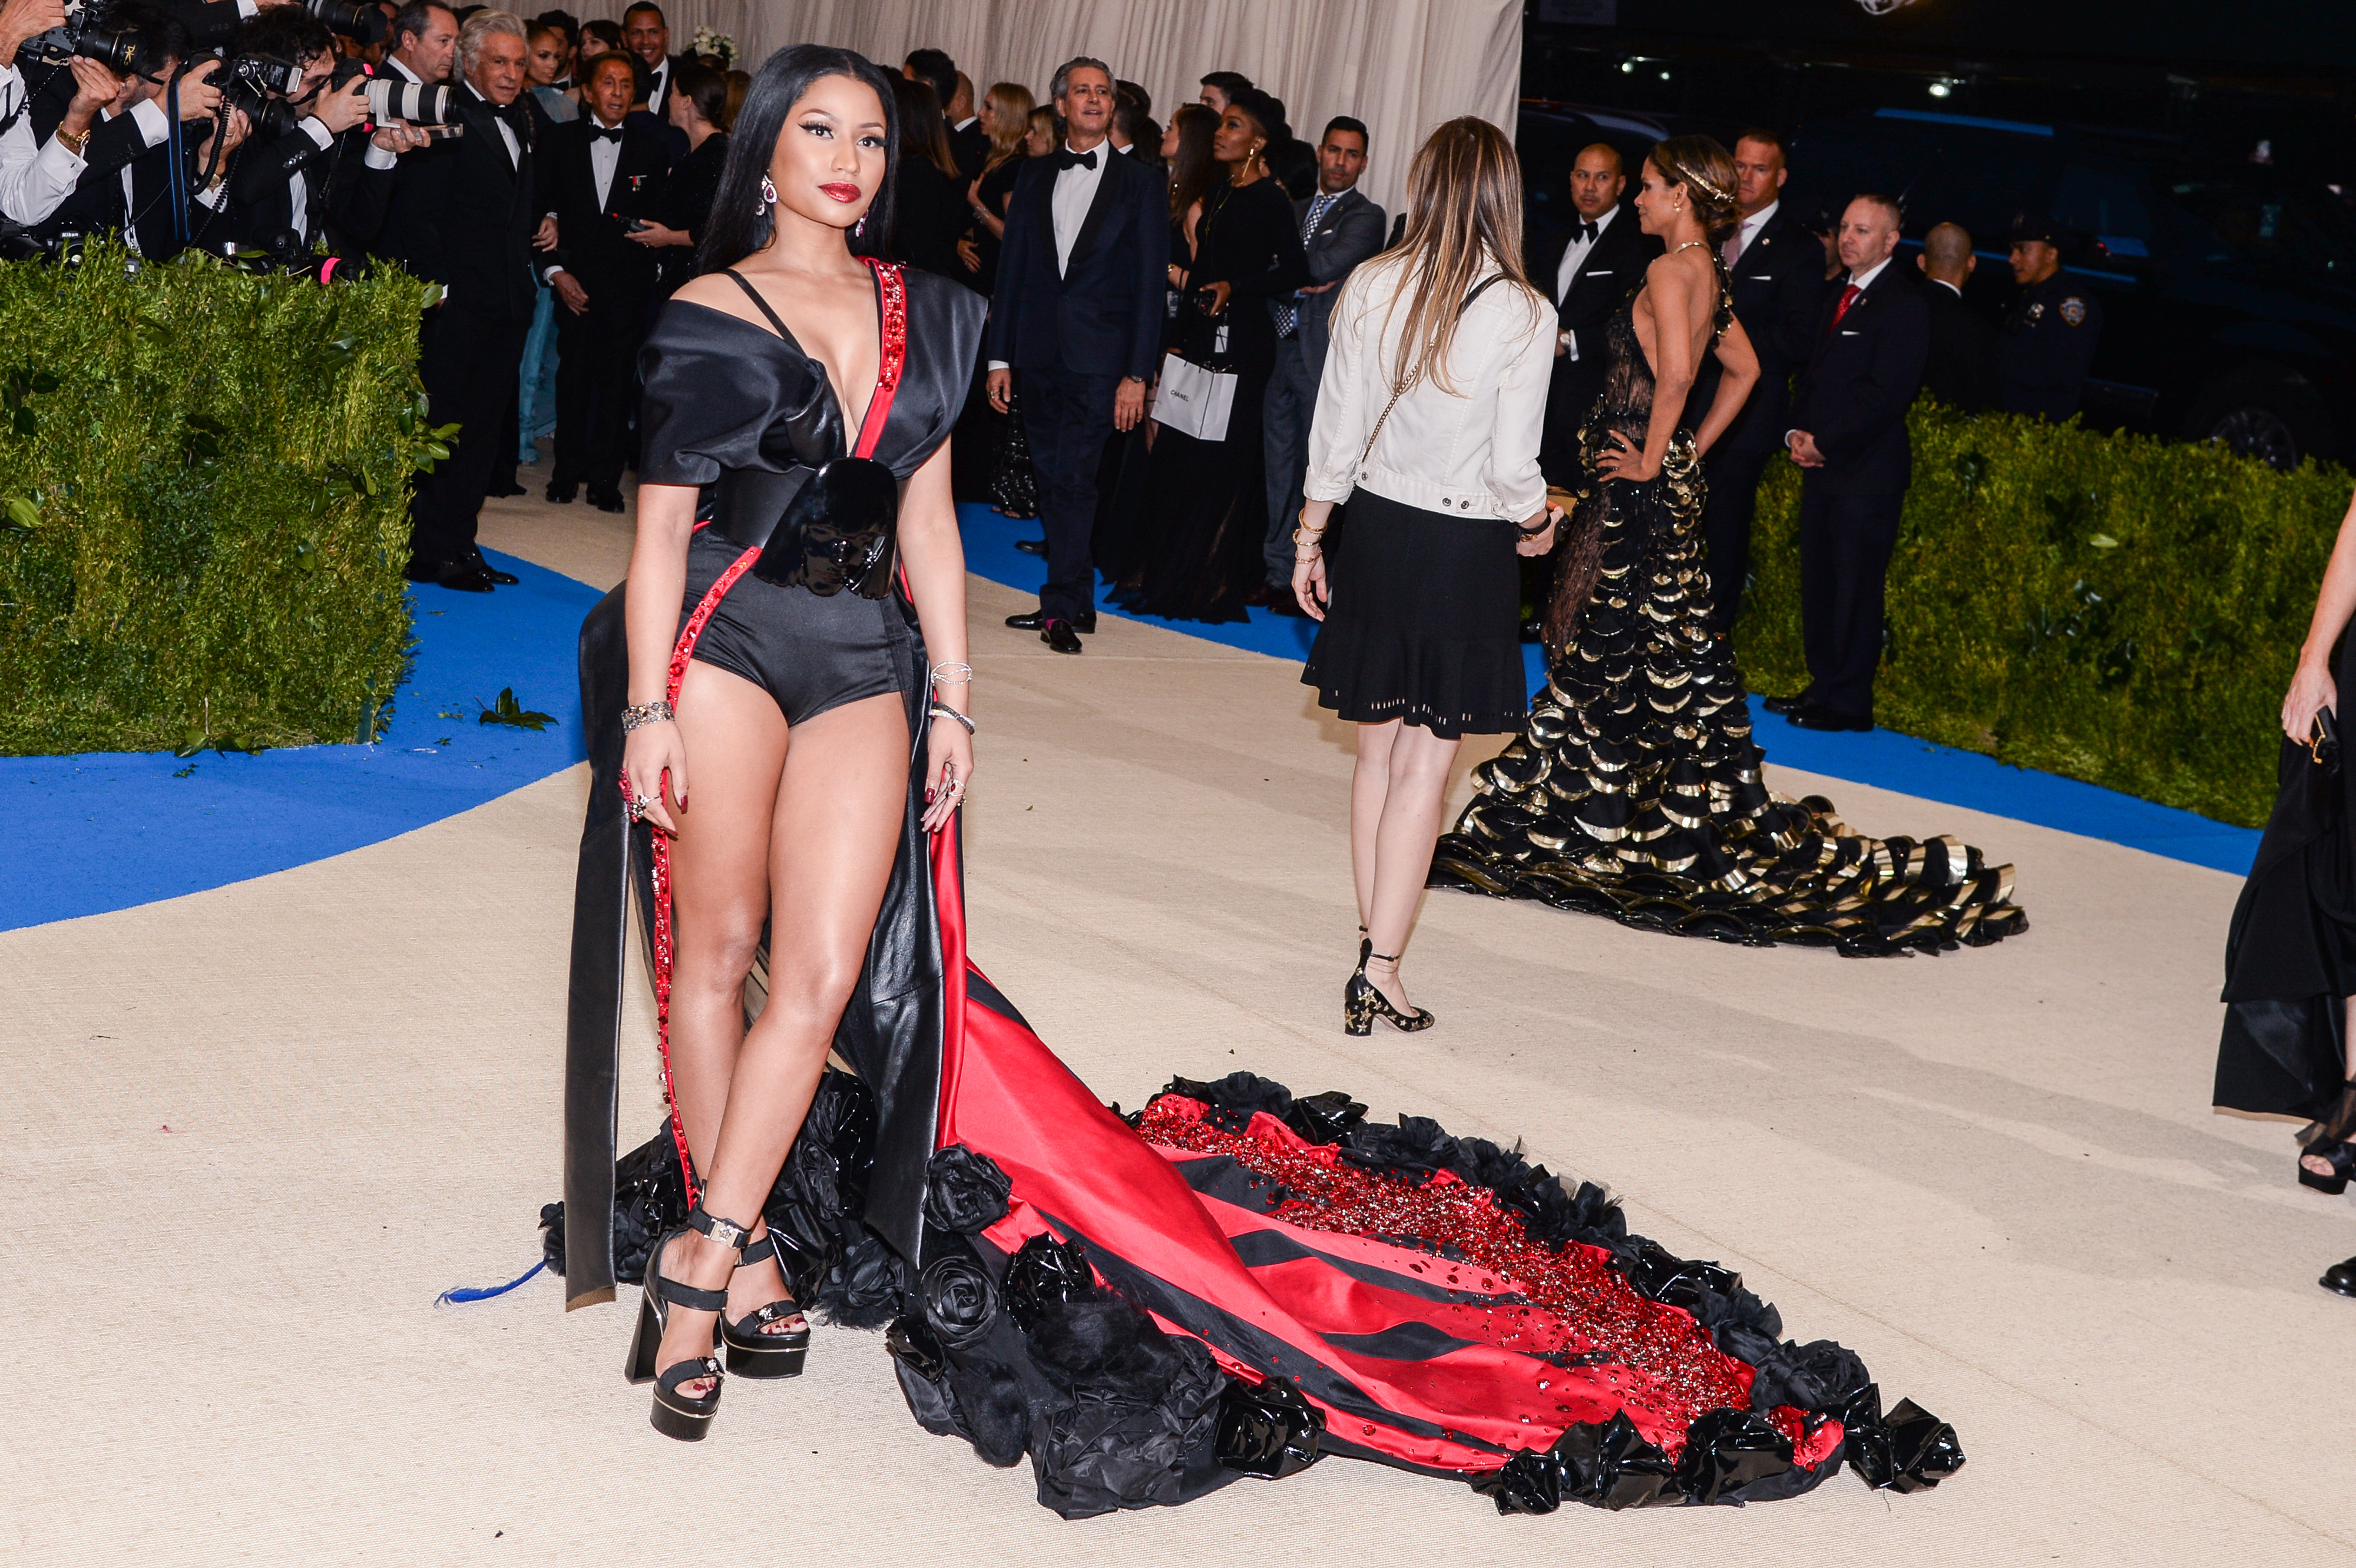 Nicki Minaj is best dressed at the Met Gala 20174000 x 2662